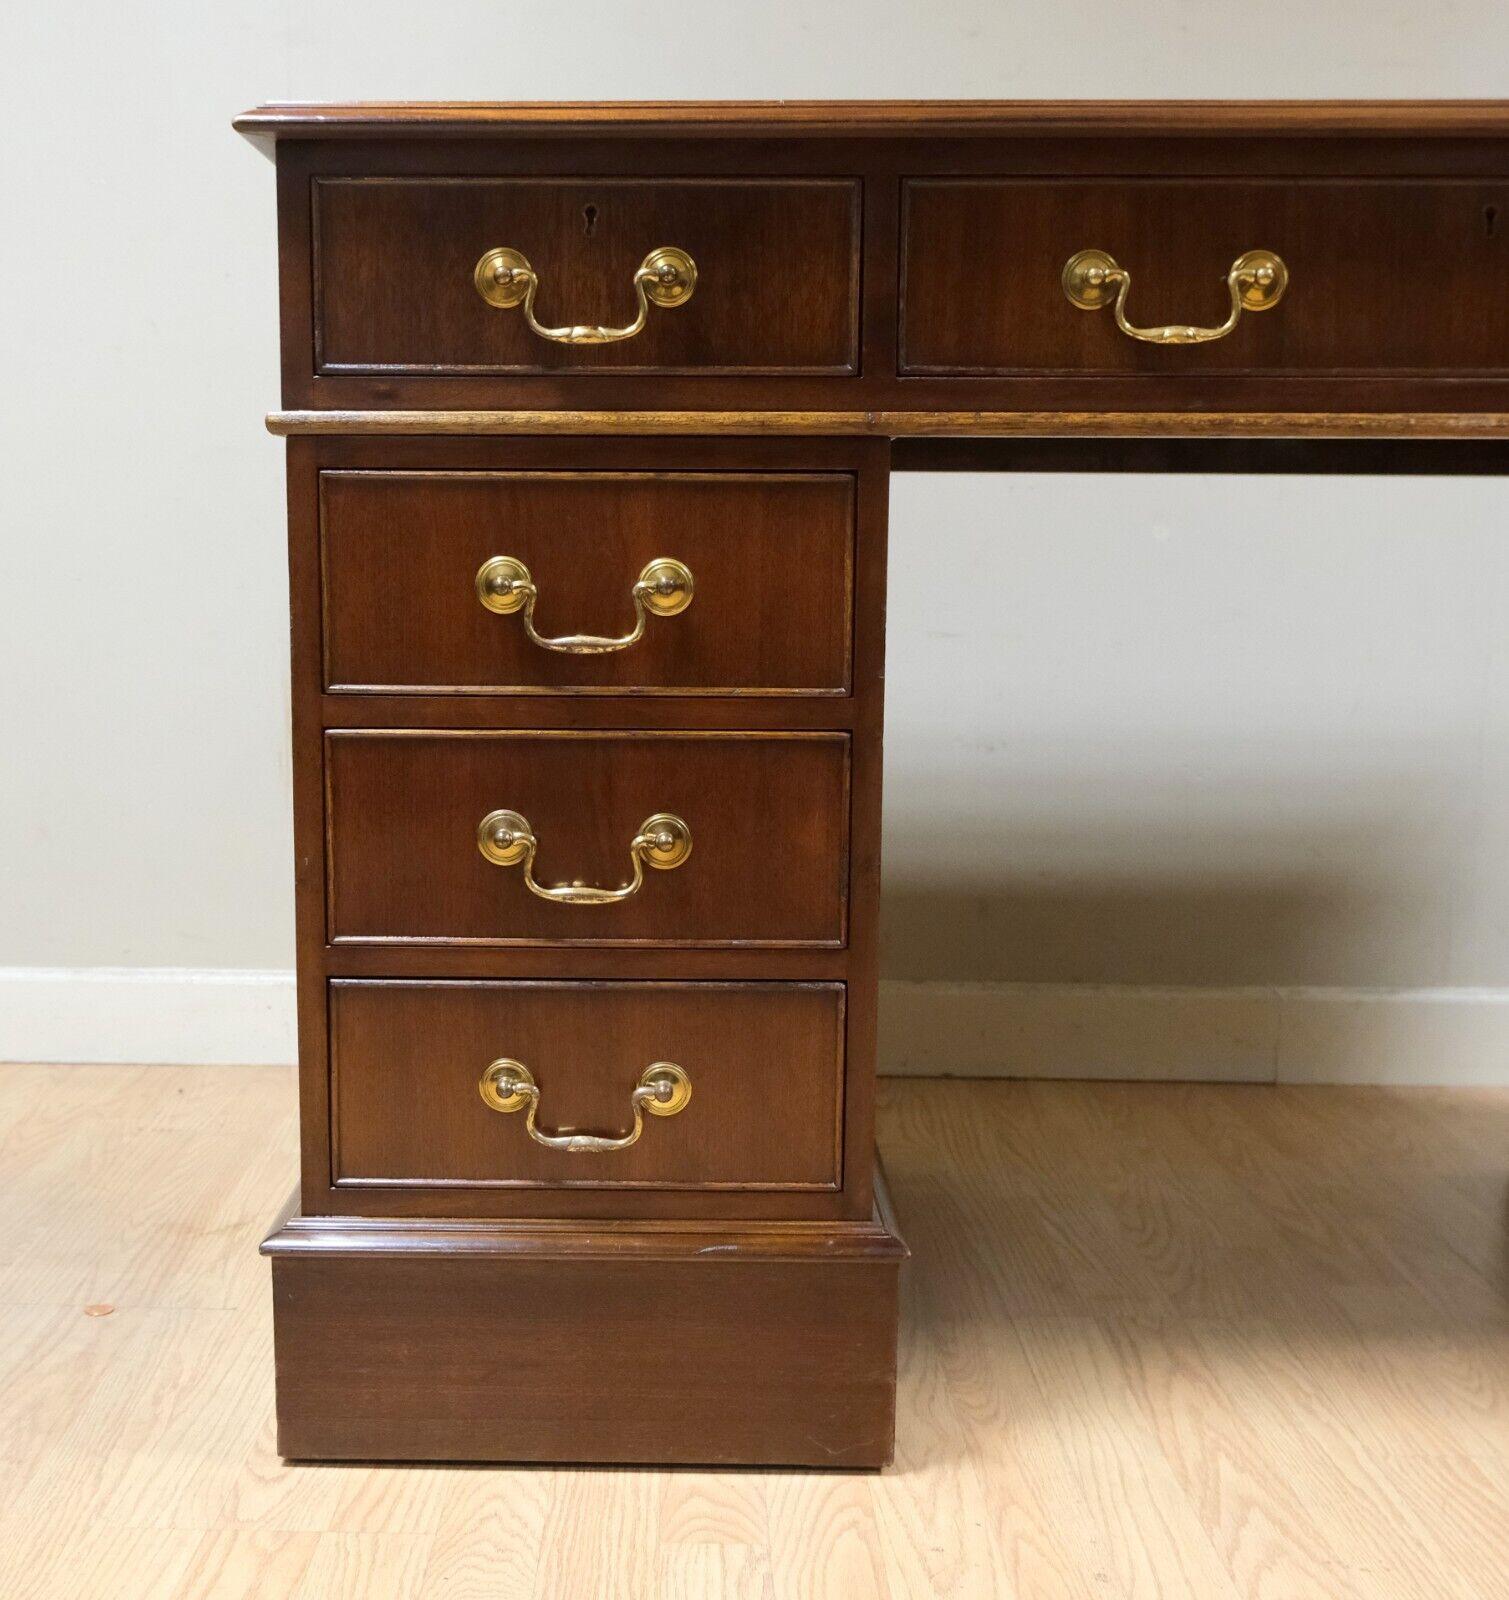 Hand-Crafted Elegant Hardwood Desk with Light Brown Leather Desk Top & Gold Leaf Tooling